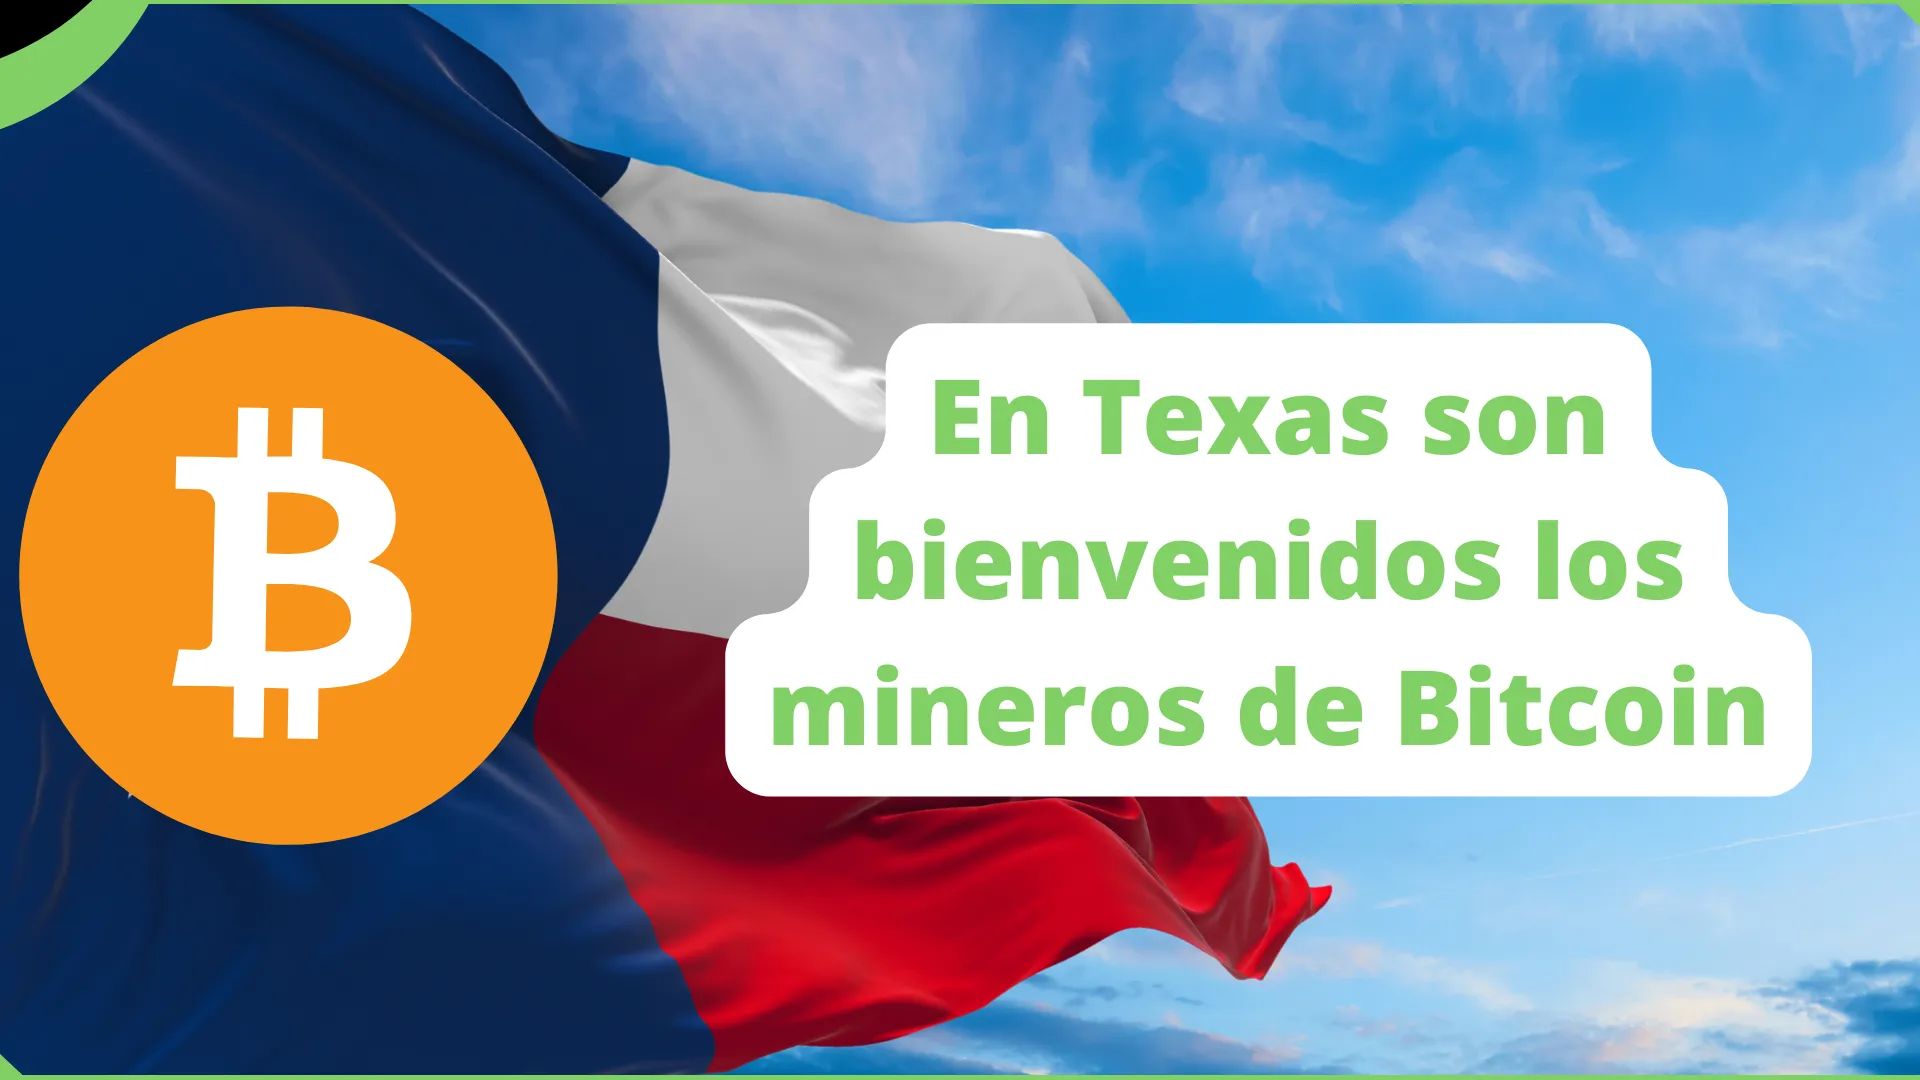 En Texas son bienvenidos los mineros de Bitcoin.